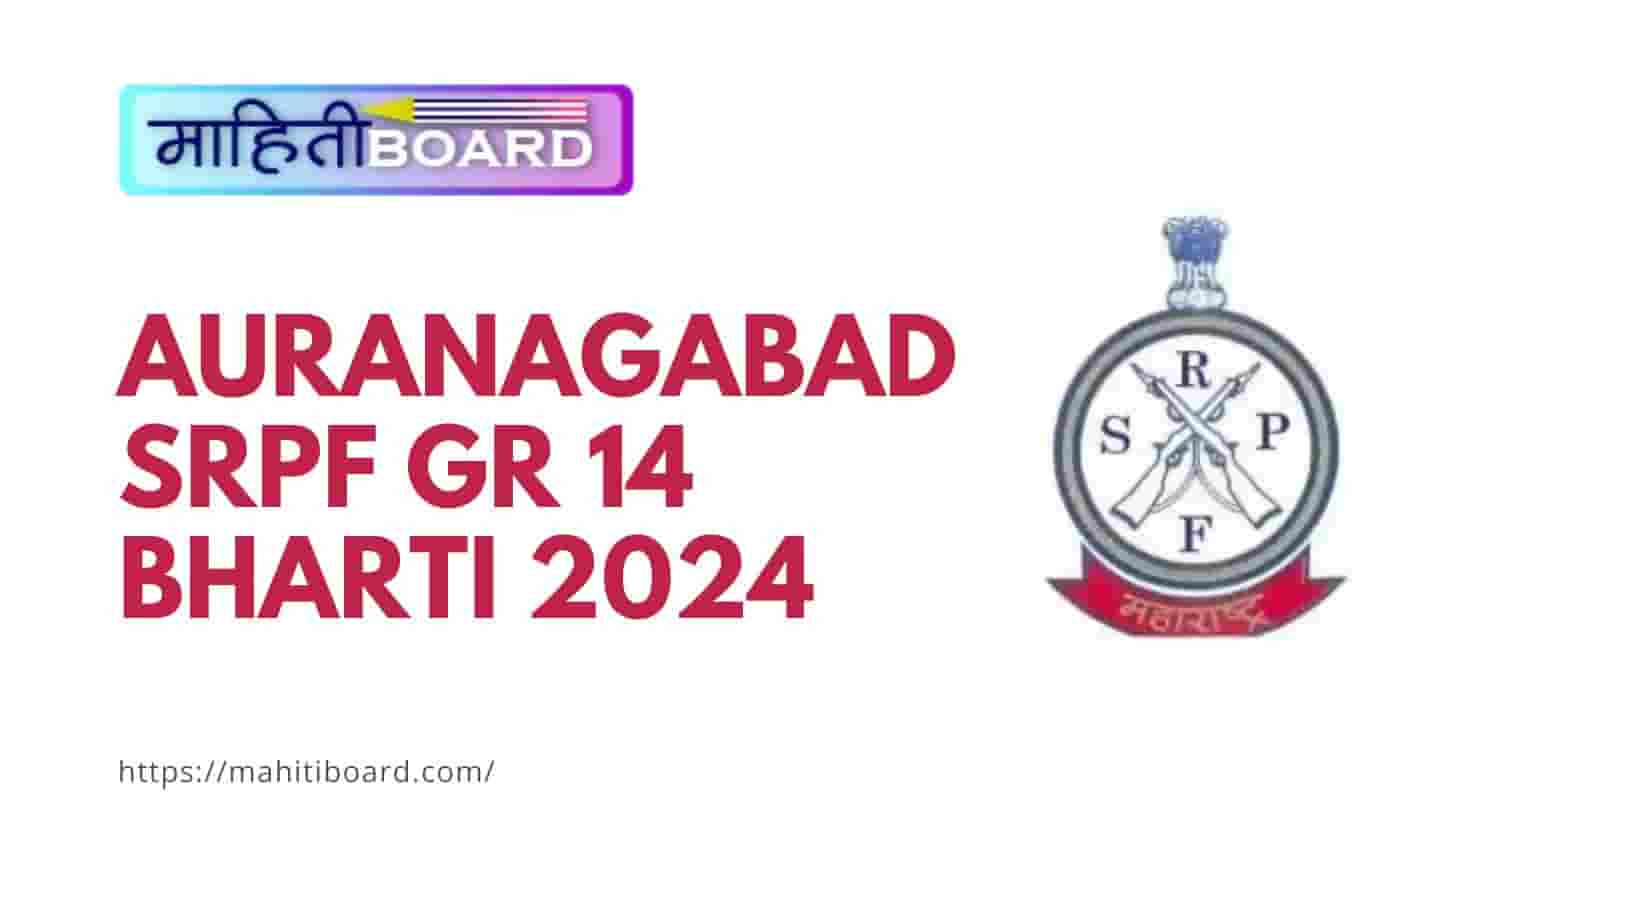 Auranagabad SRPF GR 14 Bharti 2024